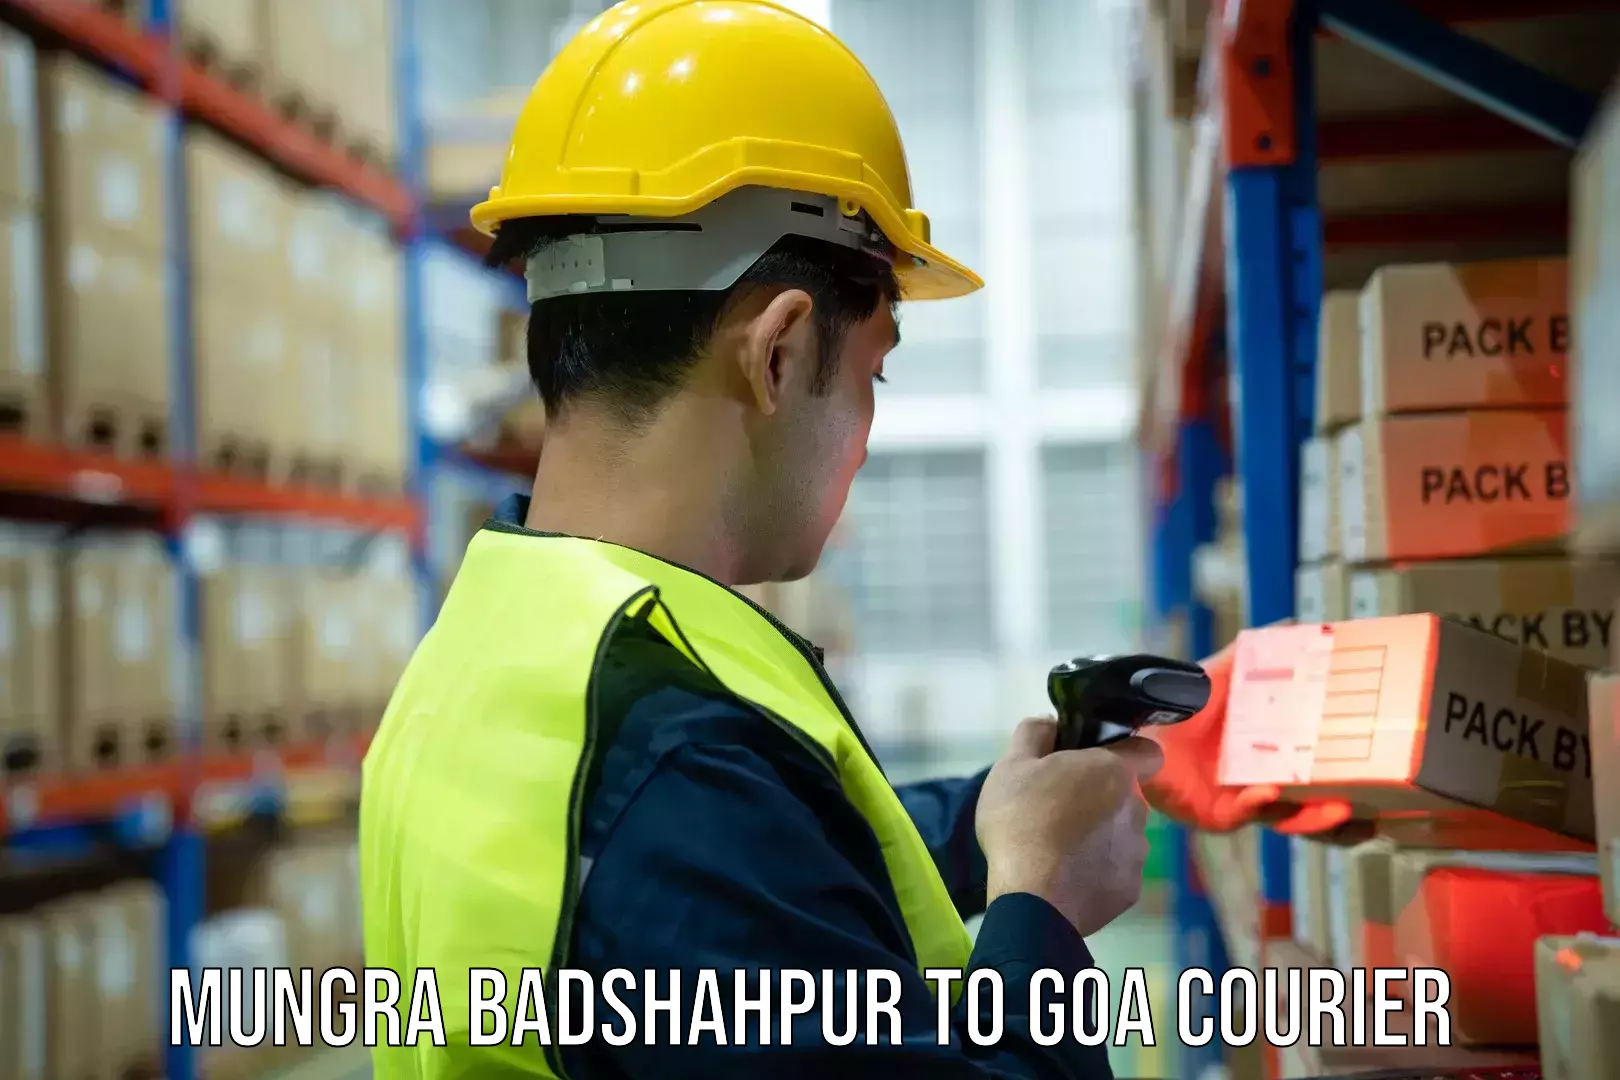 Reliable courier service Mungra Badshahpur to Vasco da Gama